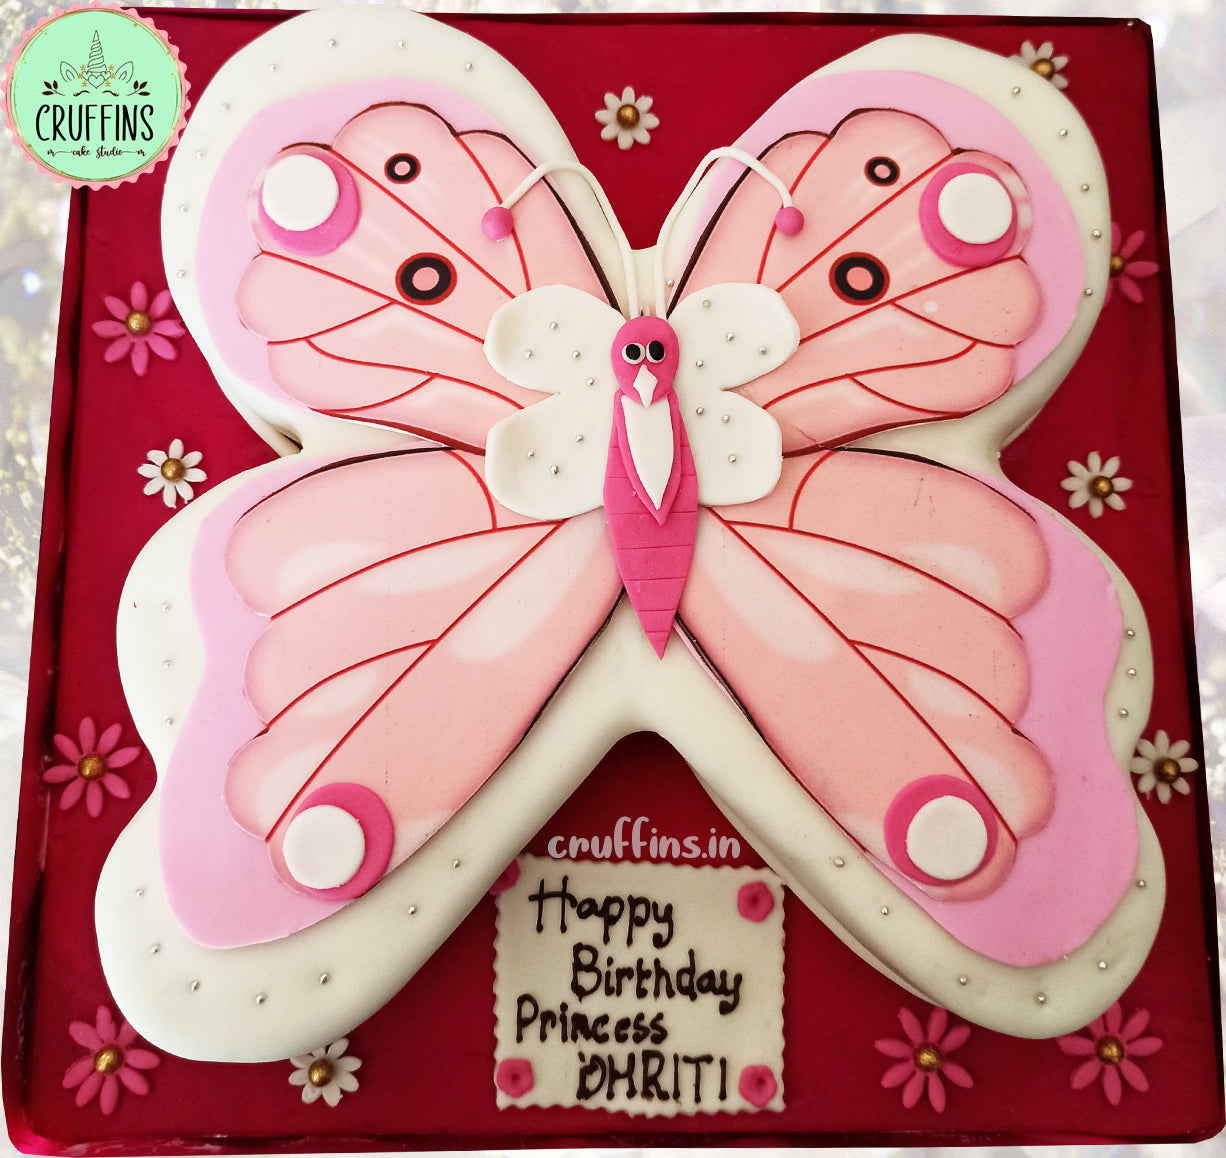 Dhriti Happy Birthday Cakes Pics Gallery